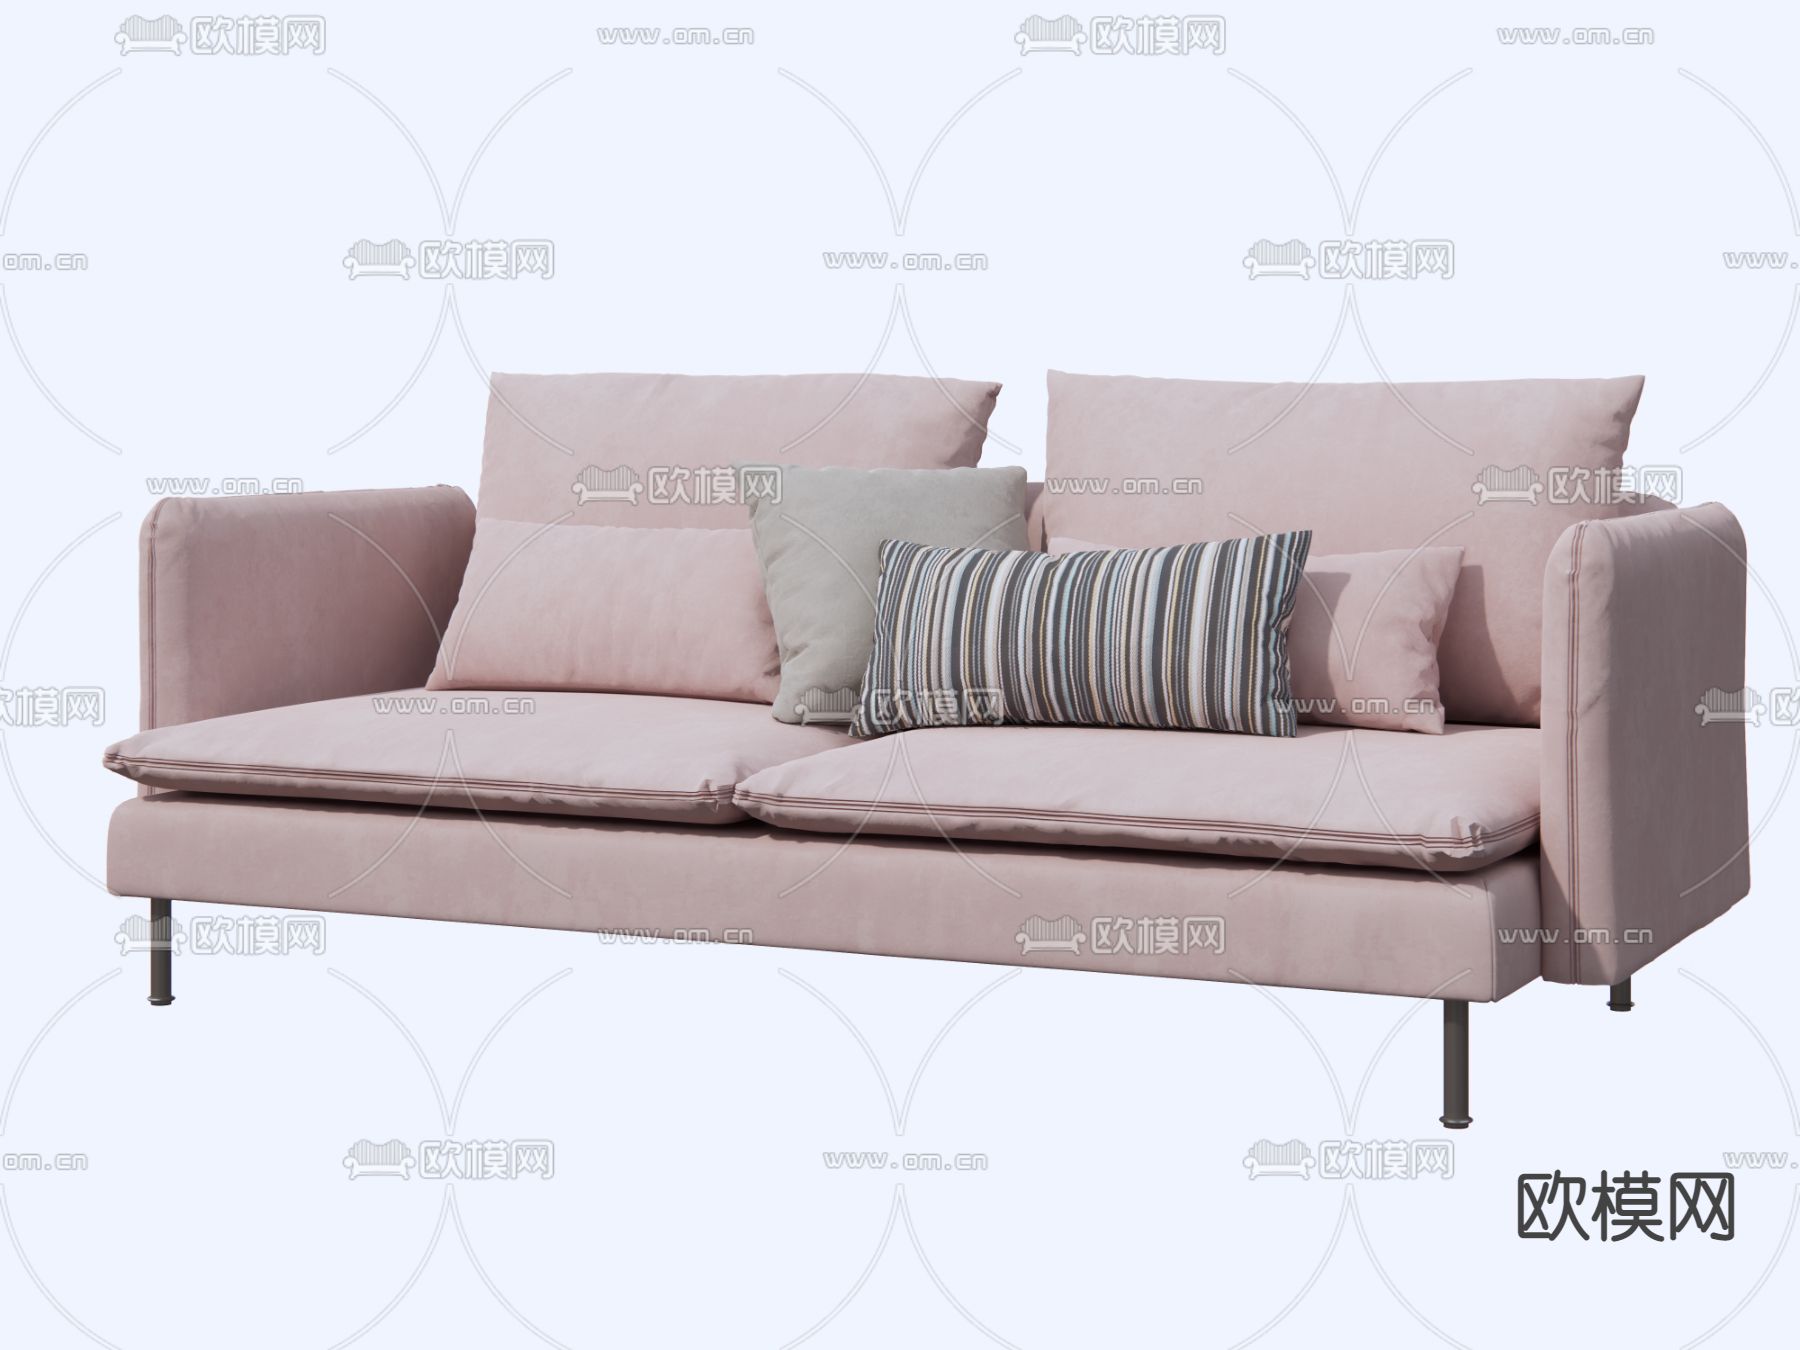 家居装饰宜家风客厅粉色沙发装修图片_装饰装修_建筑空间-图行天下素材网